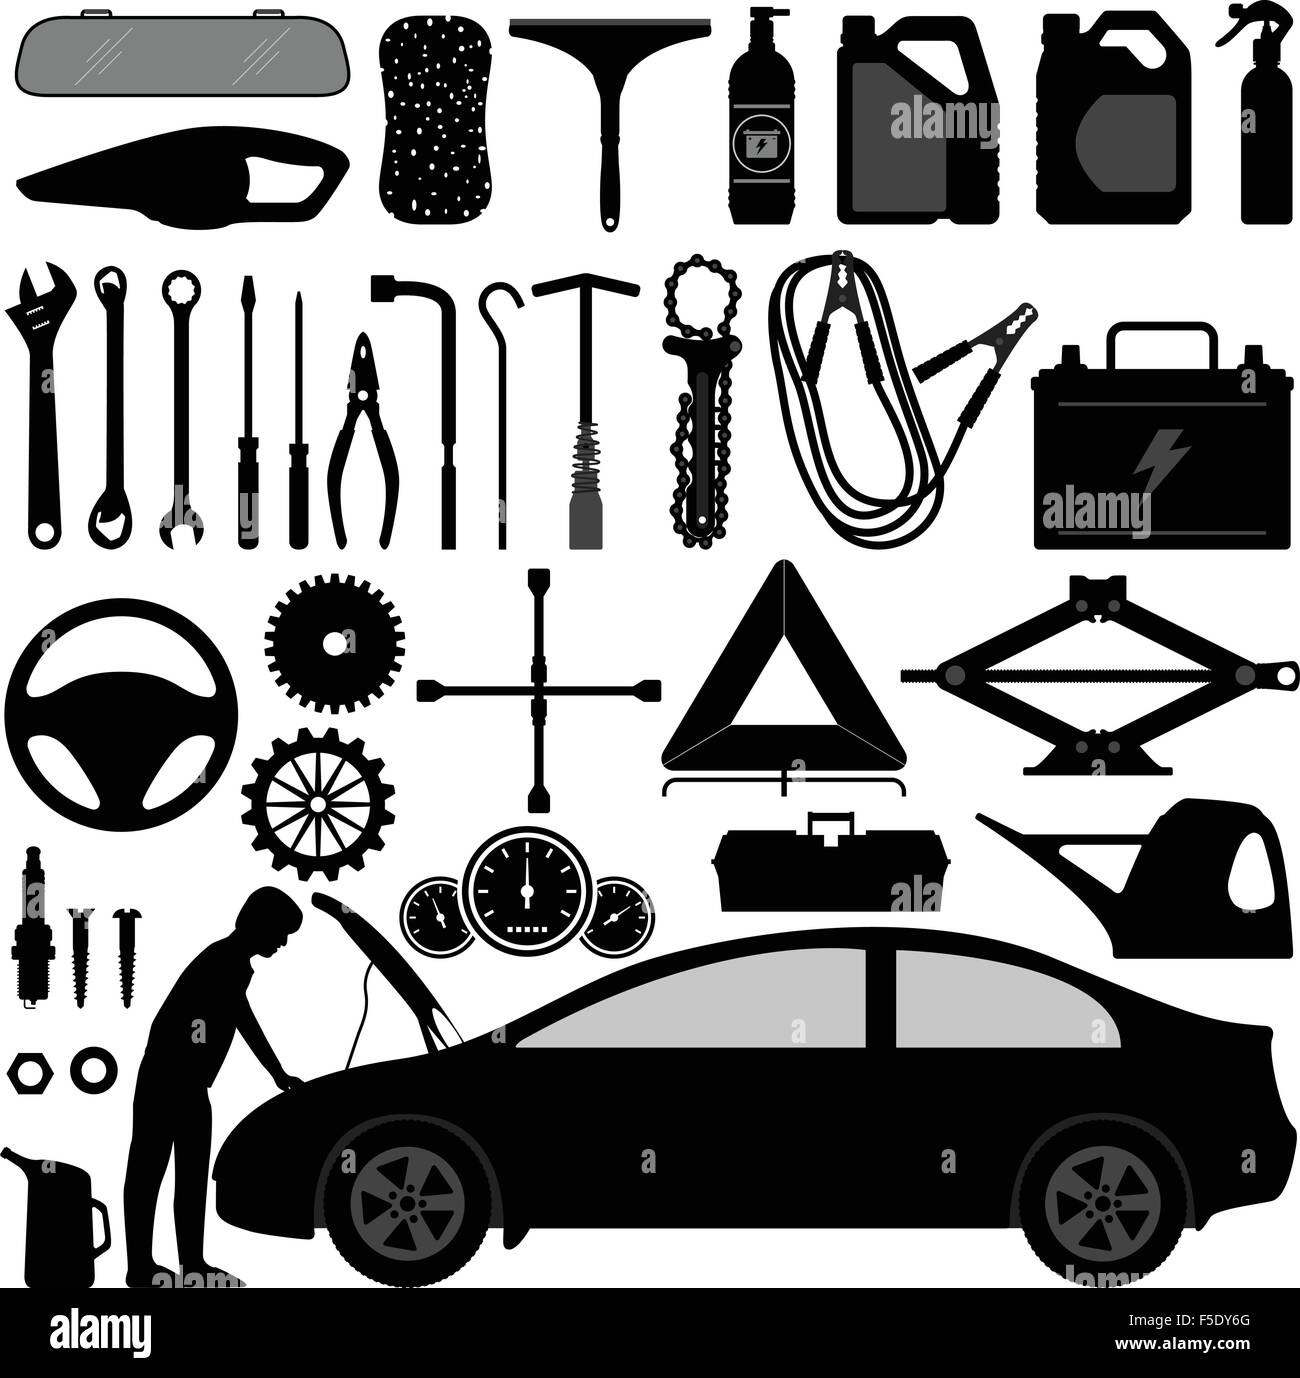 mercenario filtrar Siempre Alquiler de accesorios para Auto Repair Tool Imagen Vector de stock - Alamy